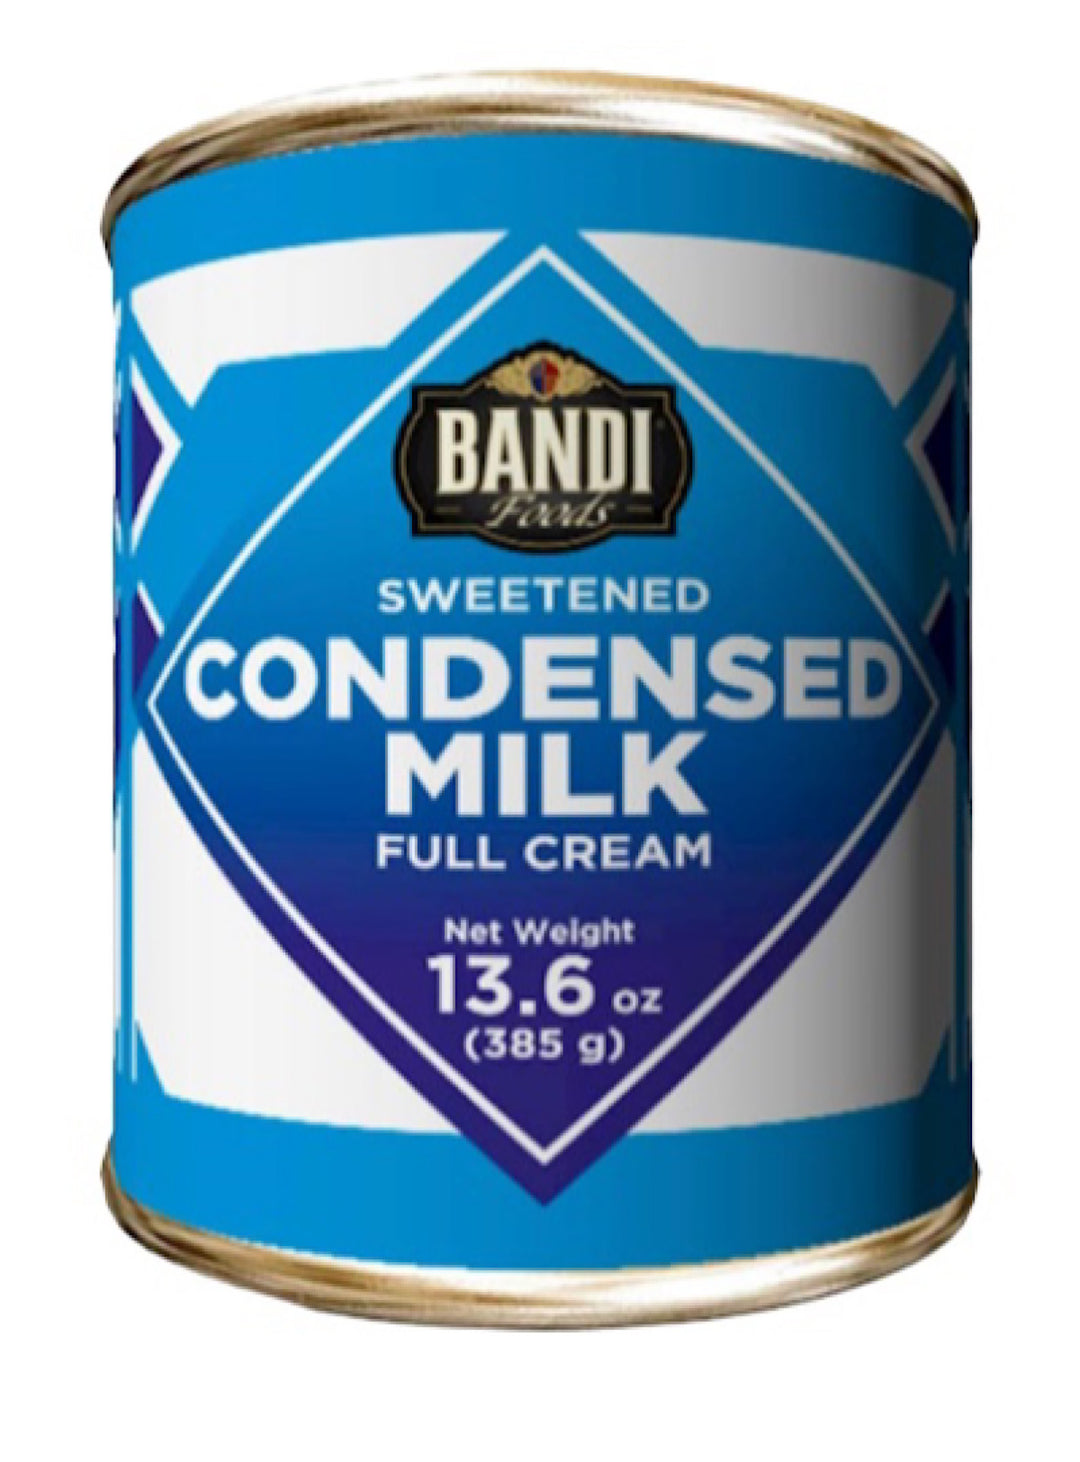 Sweetened Condensed Milk - Bandi - 385g